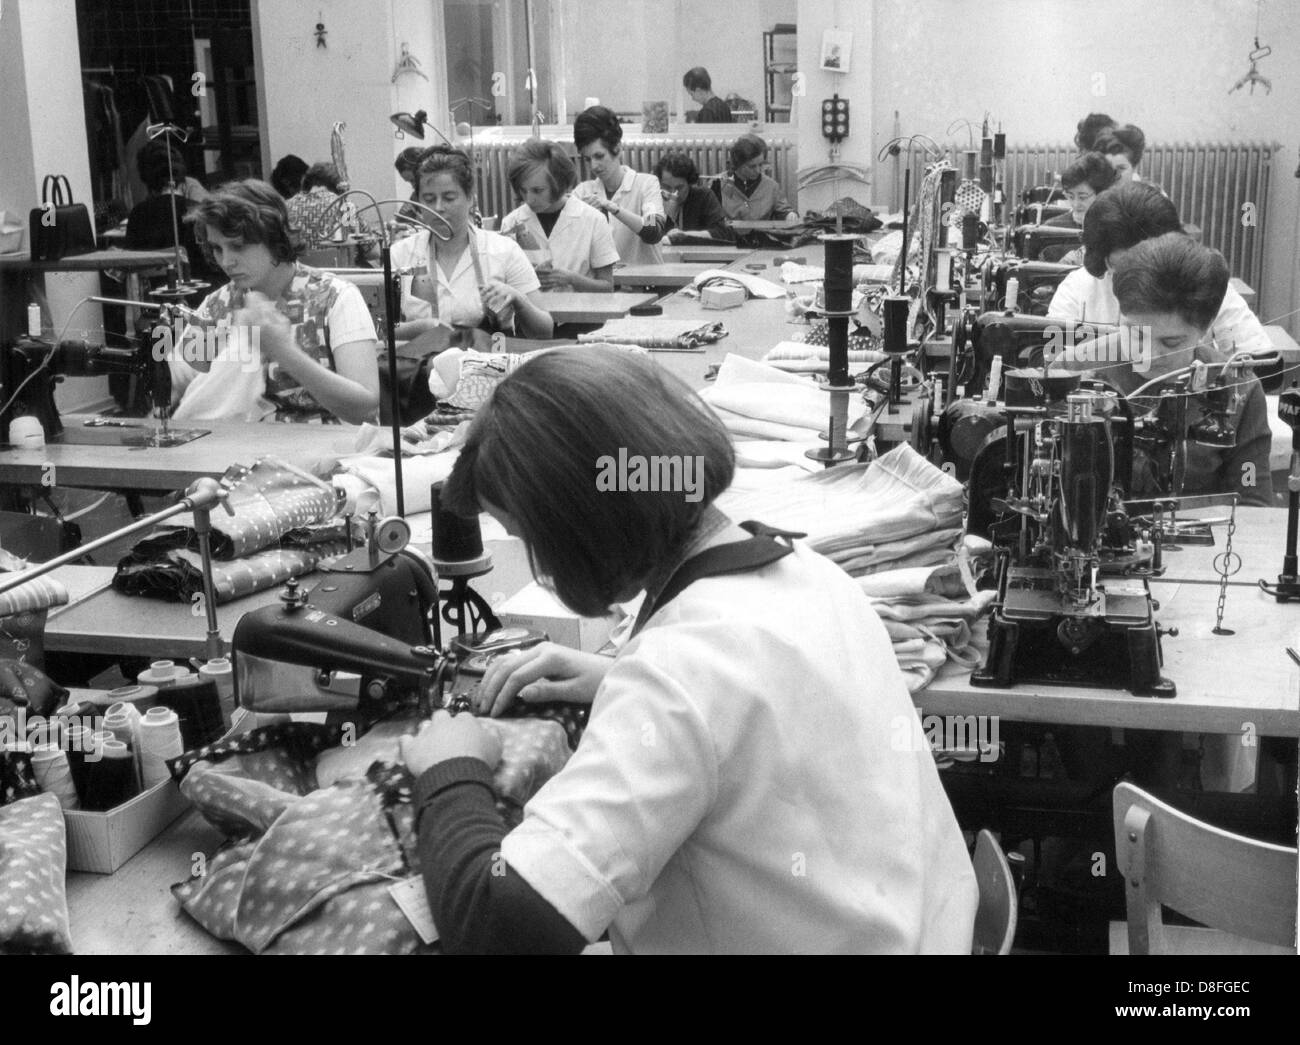 Les femmes travaillent à des machines à coudre dans une société du tailleur, photographié en 1965. Banque D'Images